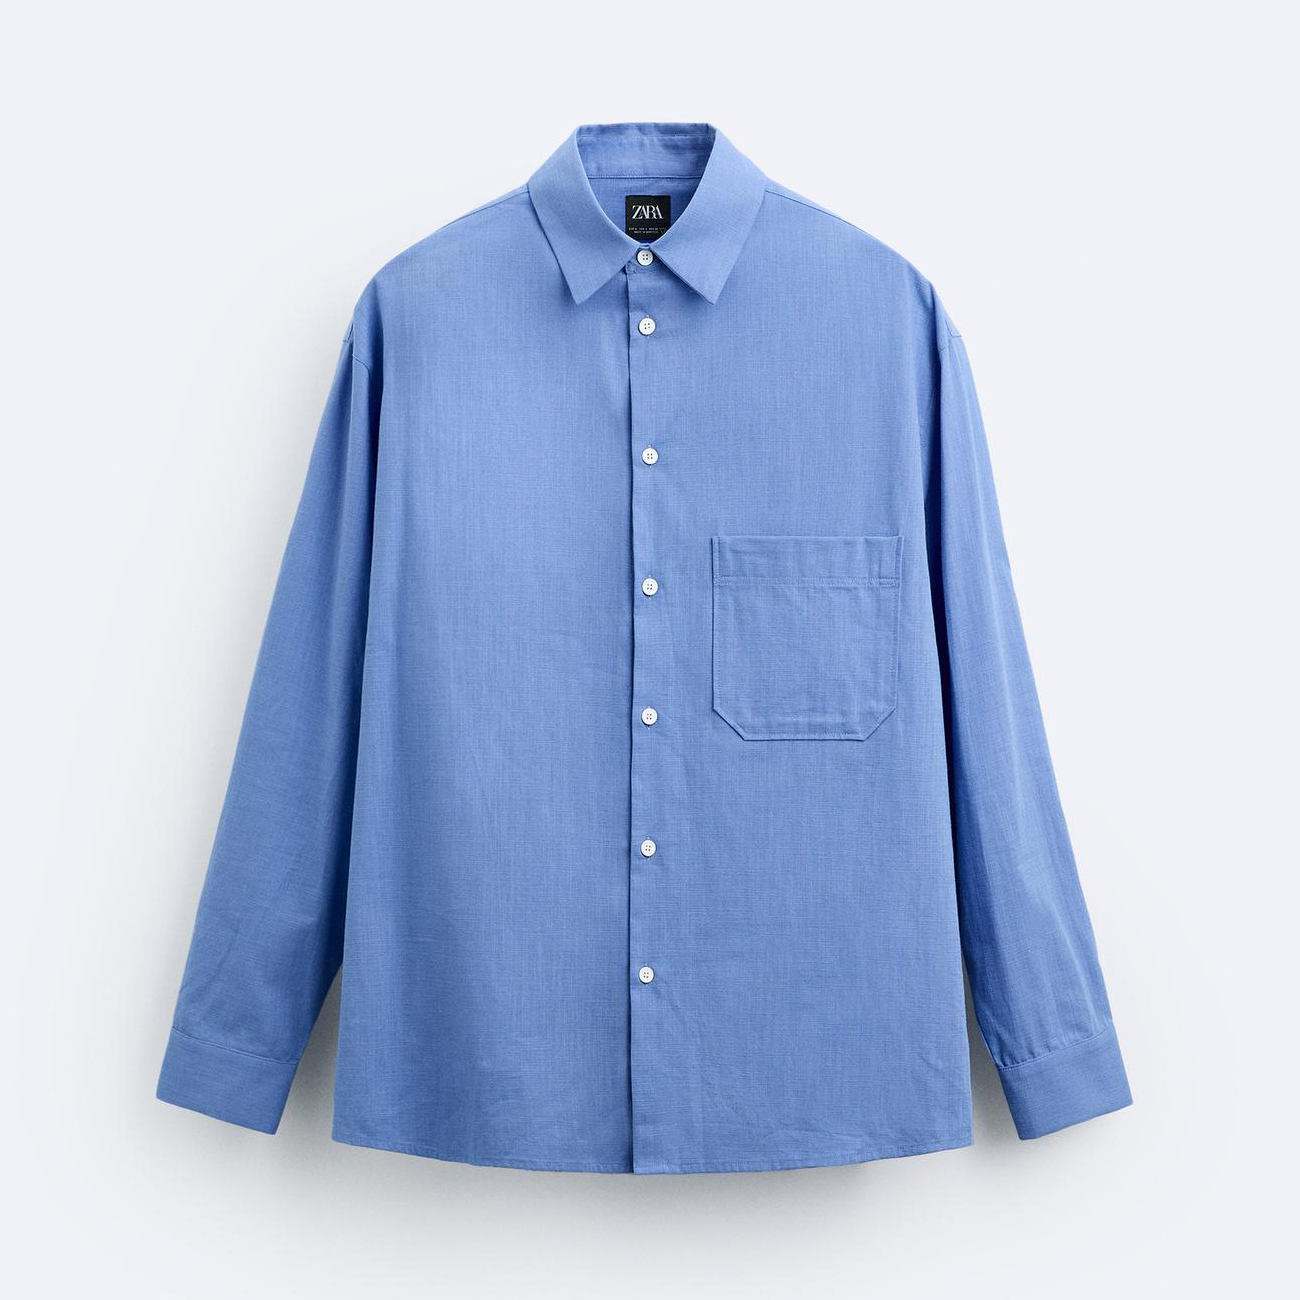 Рубашка Zara Cotton With Pocket, голубой рубашка zara oxford shirt with pocket голубой